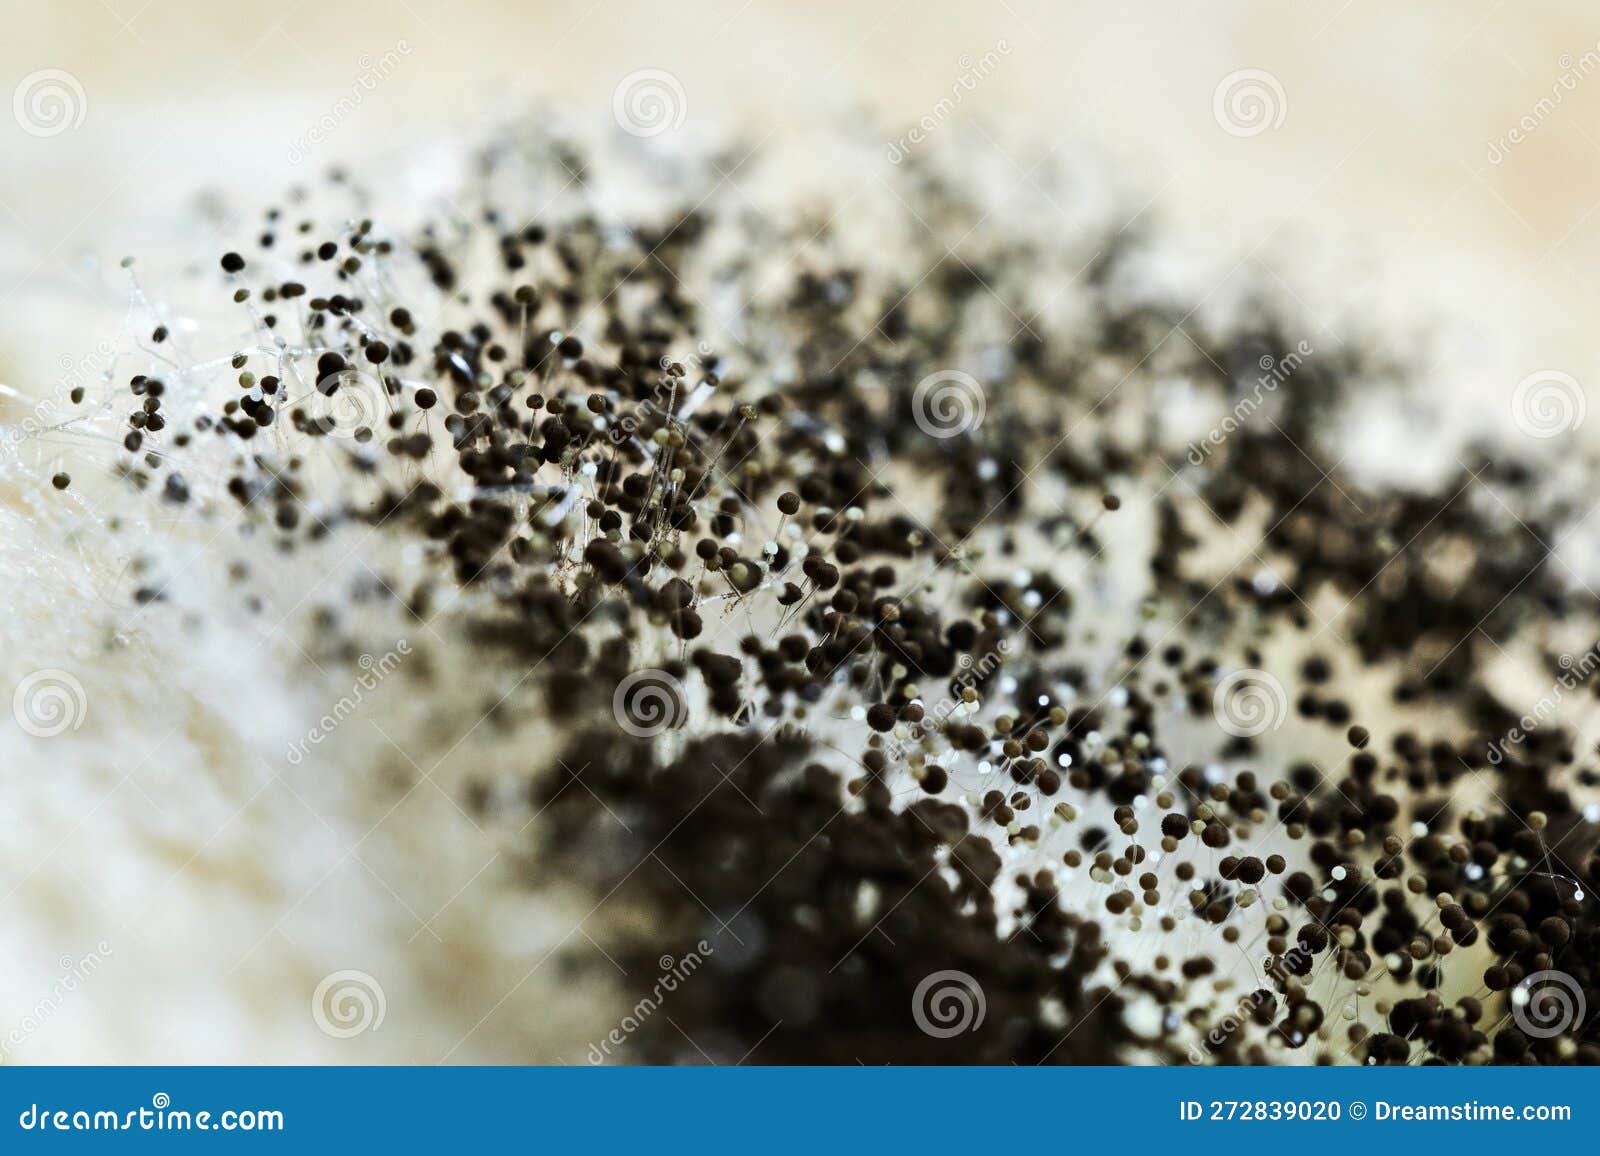 detailed macro photo of black mold, aspergillus fumigatus fungus close-up